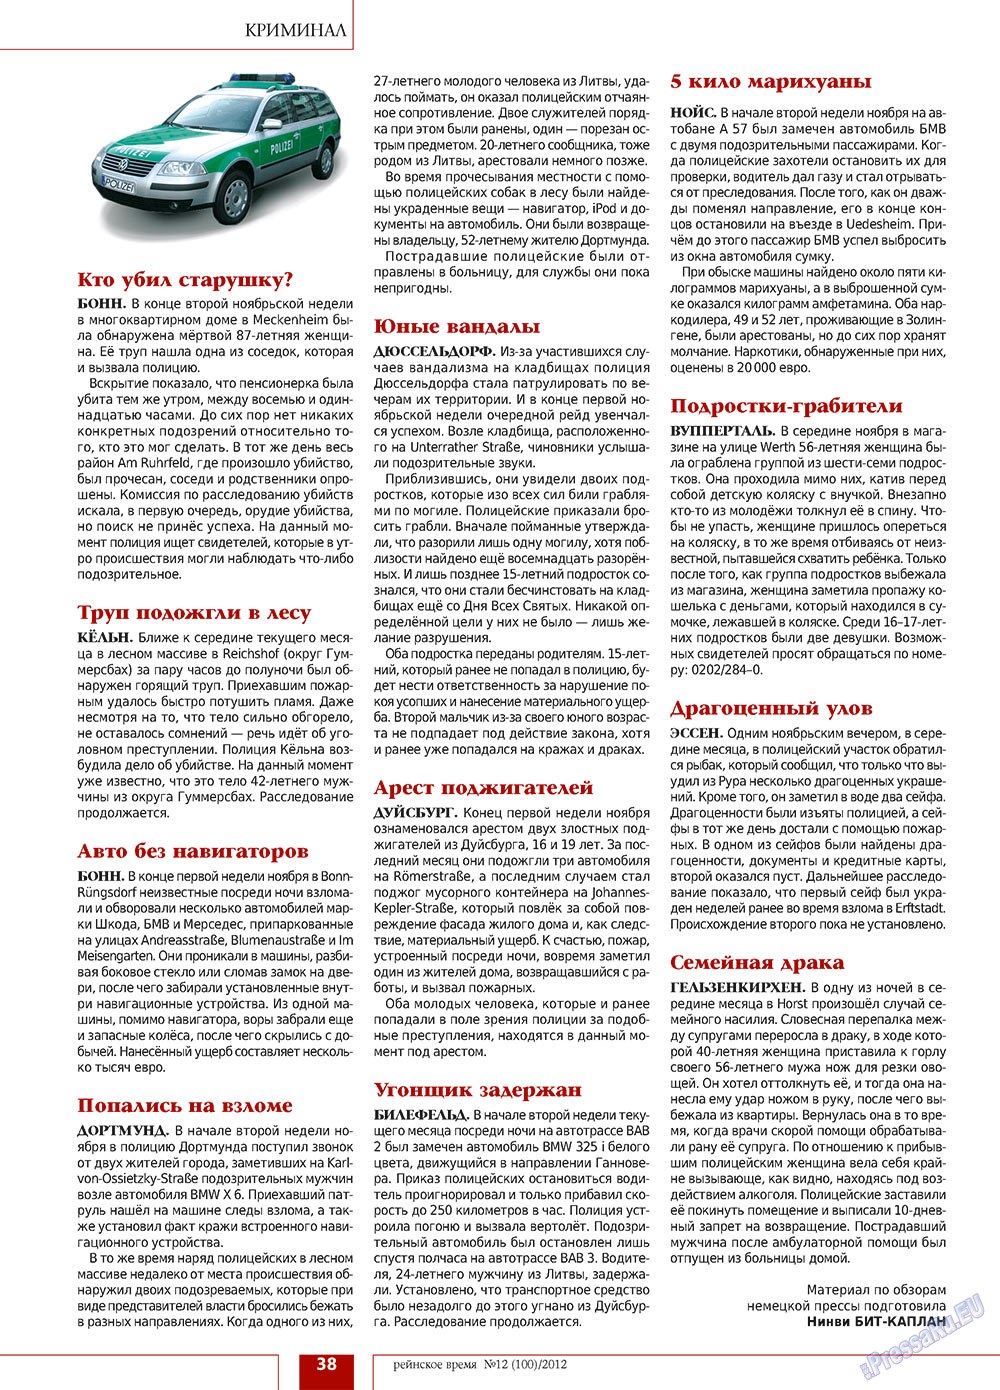 Рейнское время, журнал. 2012 №12 стр.38